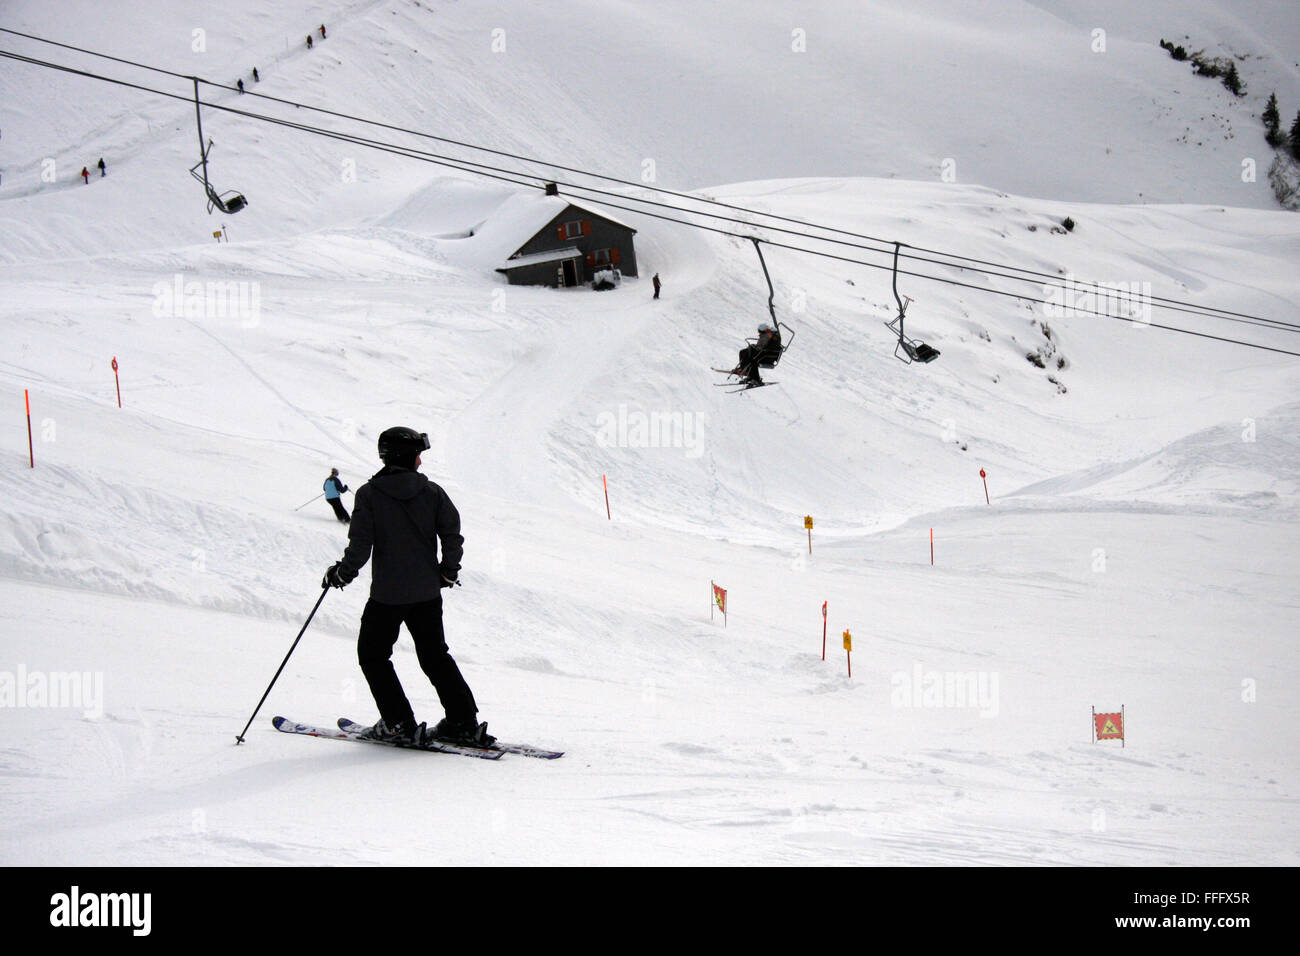 Ski alpin auf dem Nebelhorn, Winterstimmung, Oberstorf, Bayerische Alpen. Stock Photo